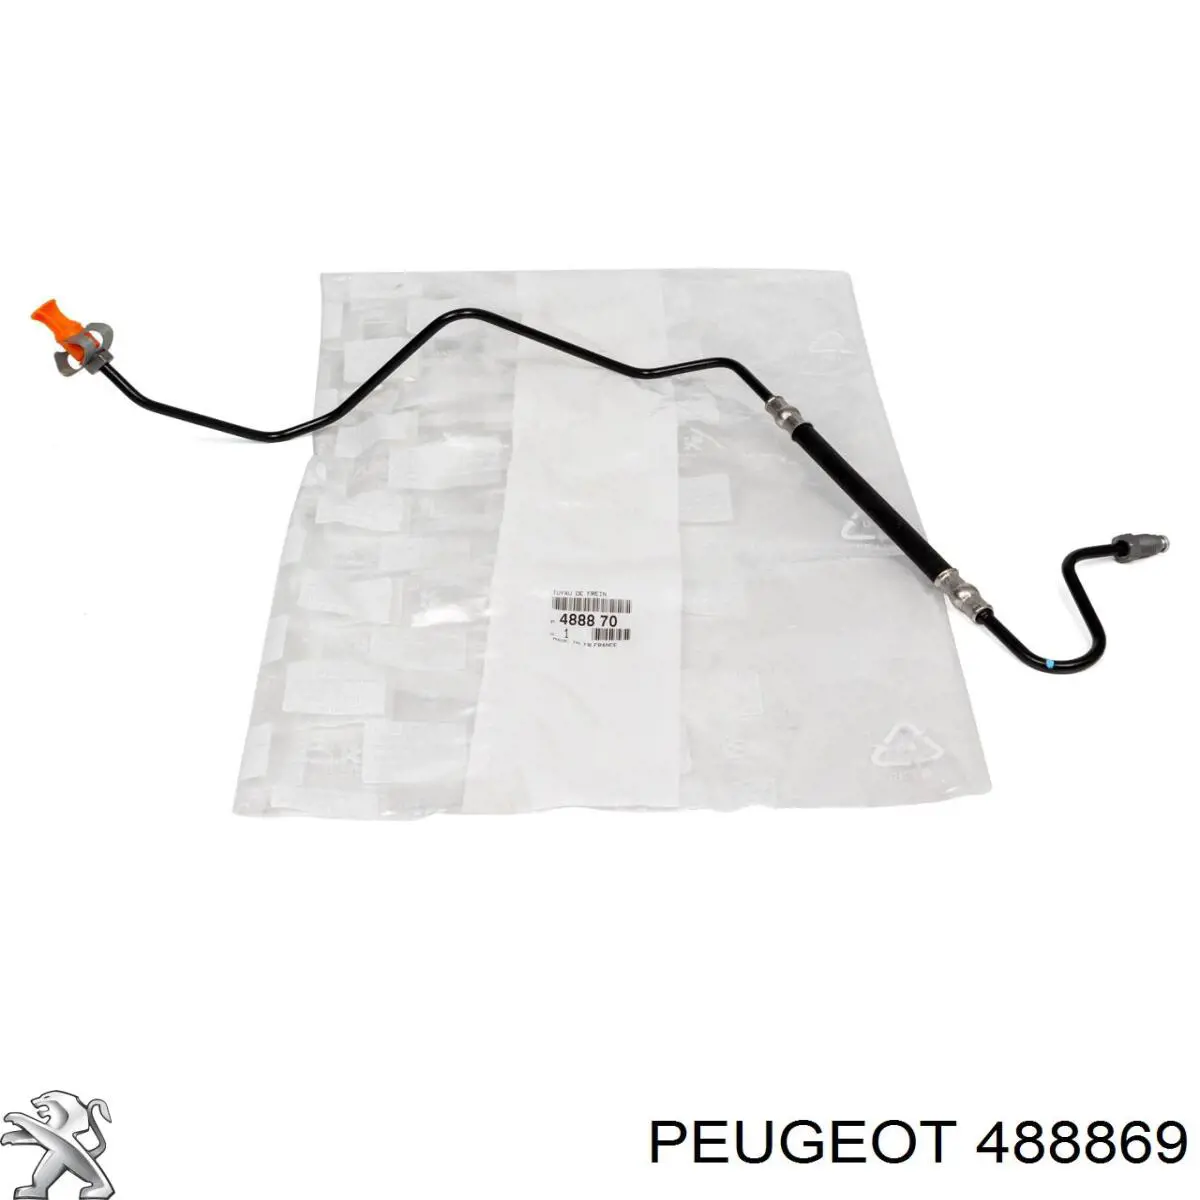 488869 Peugeot/Citroen latiguillo de freno trasero izquierdo